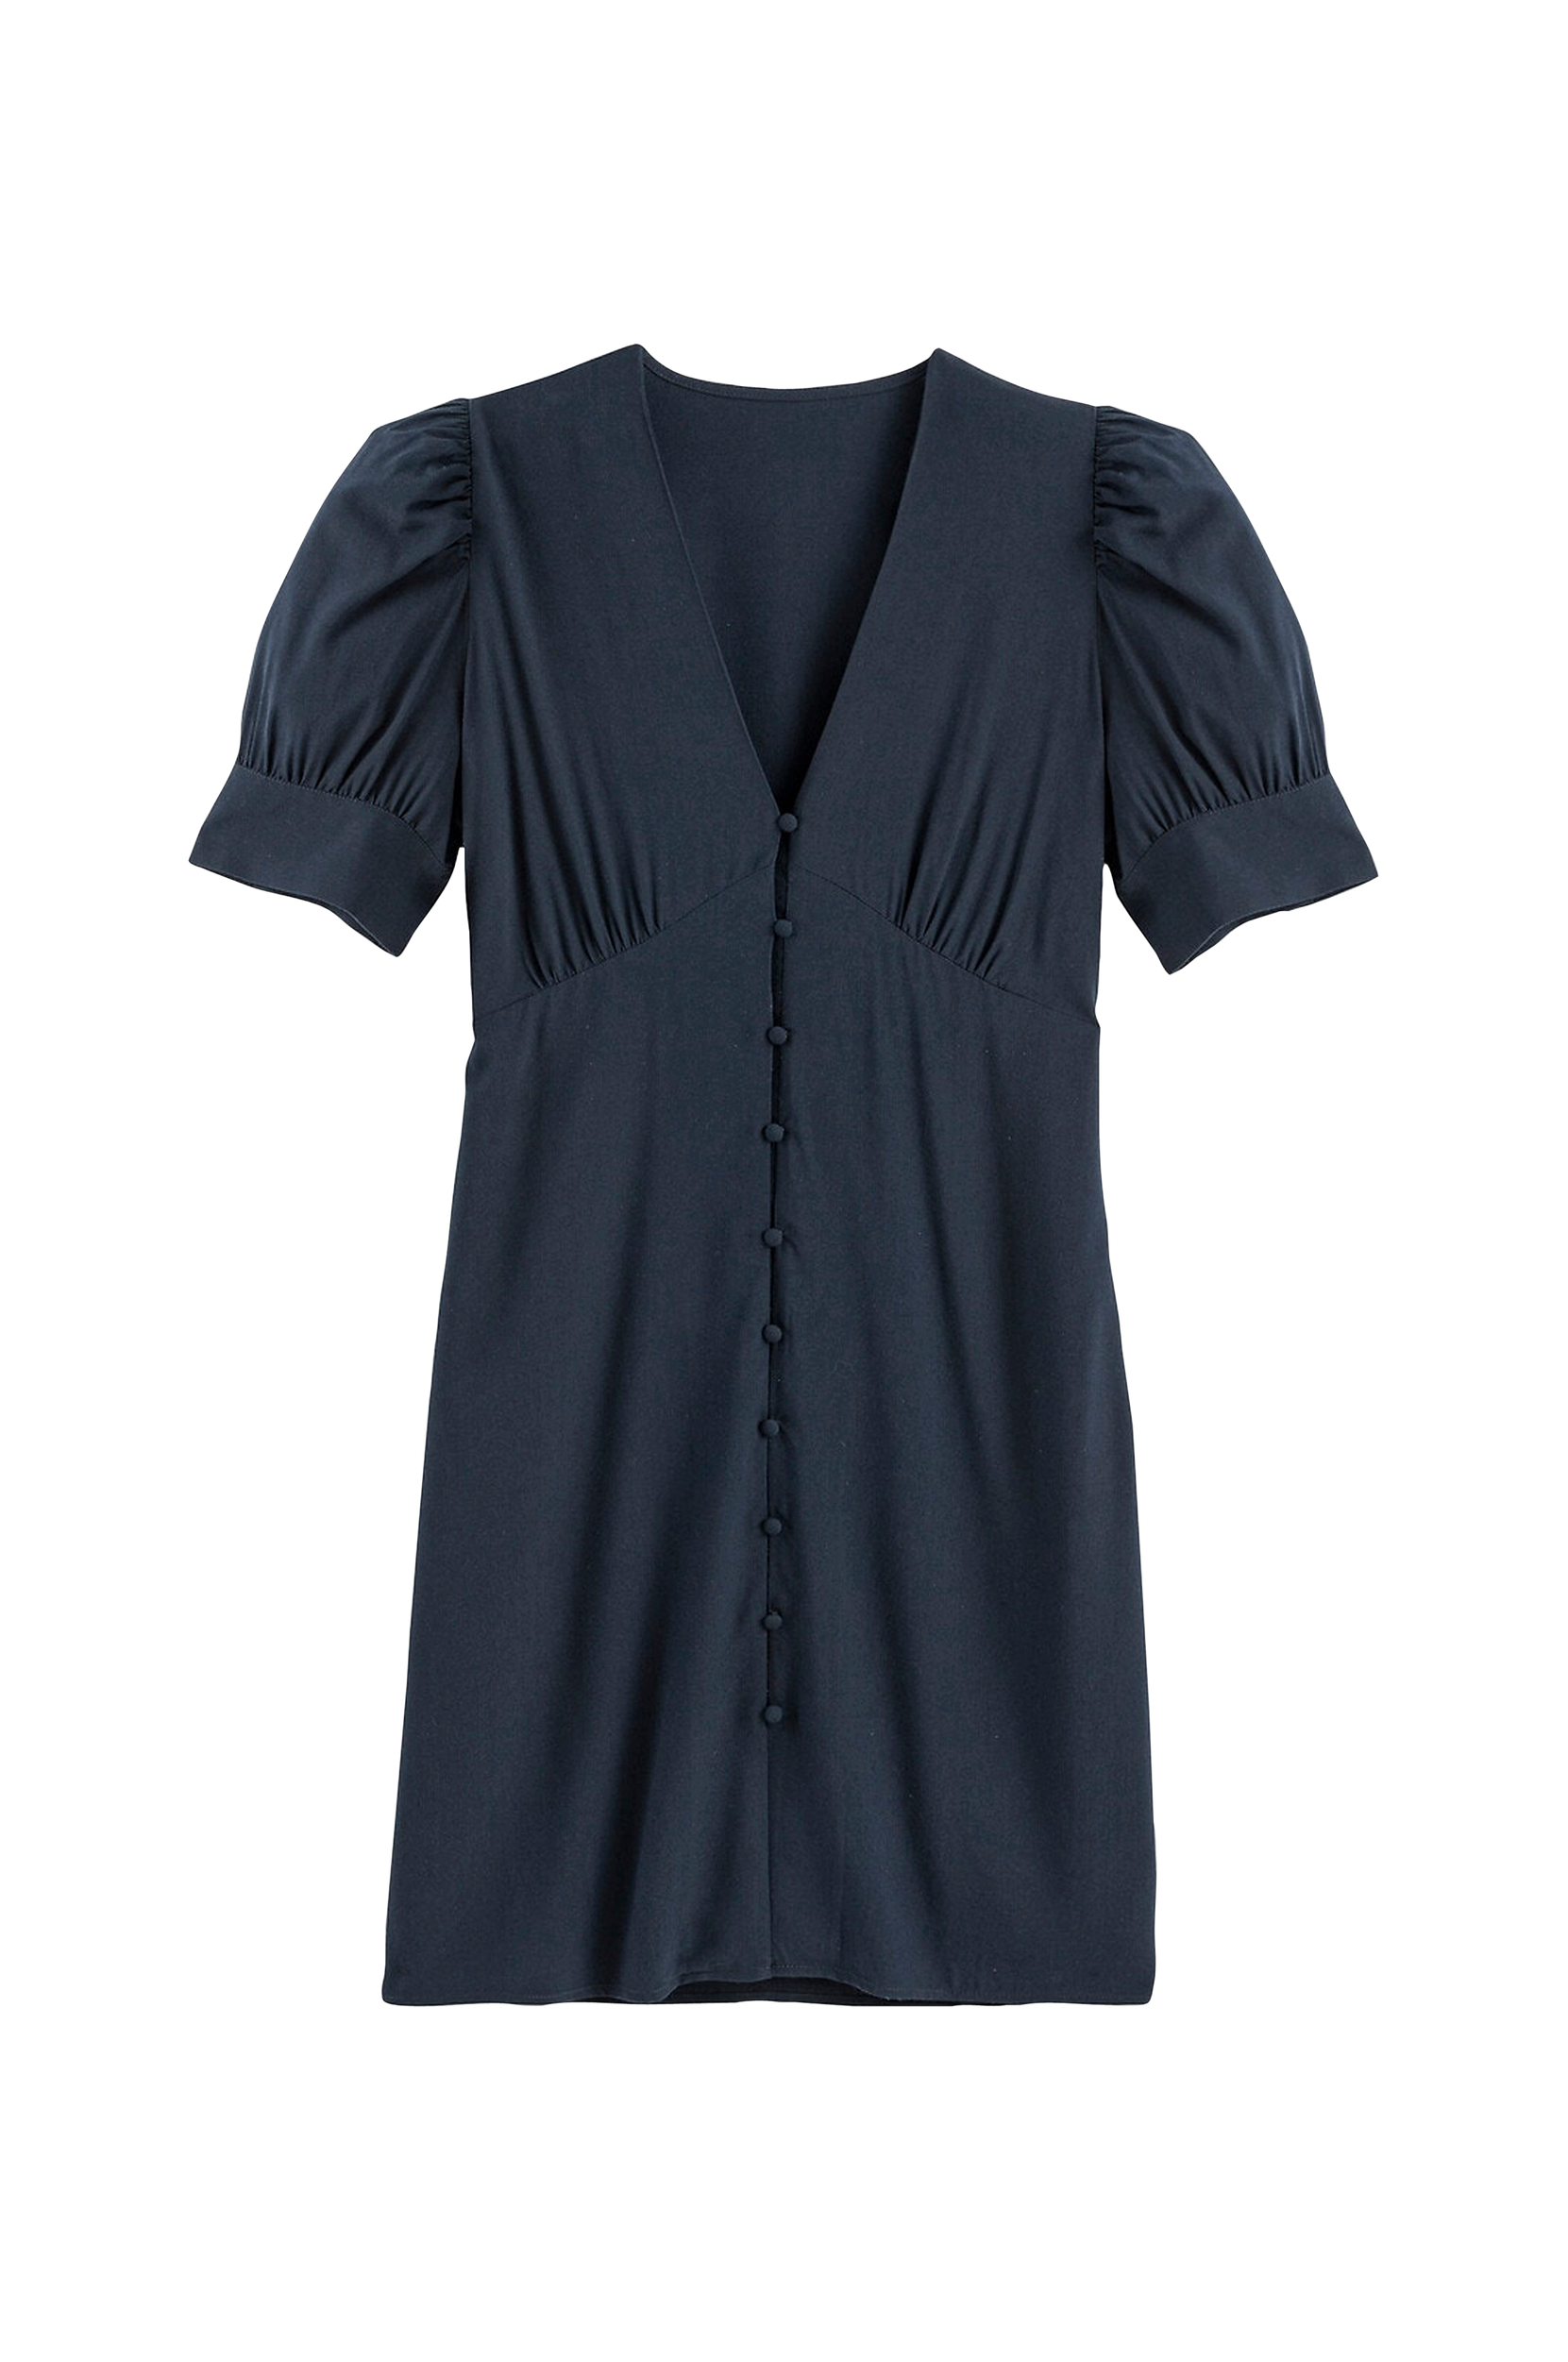 La Redoute - Kort kjole med V-udskæring og kort ærme - Blå - 34